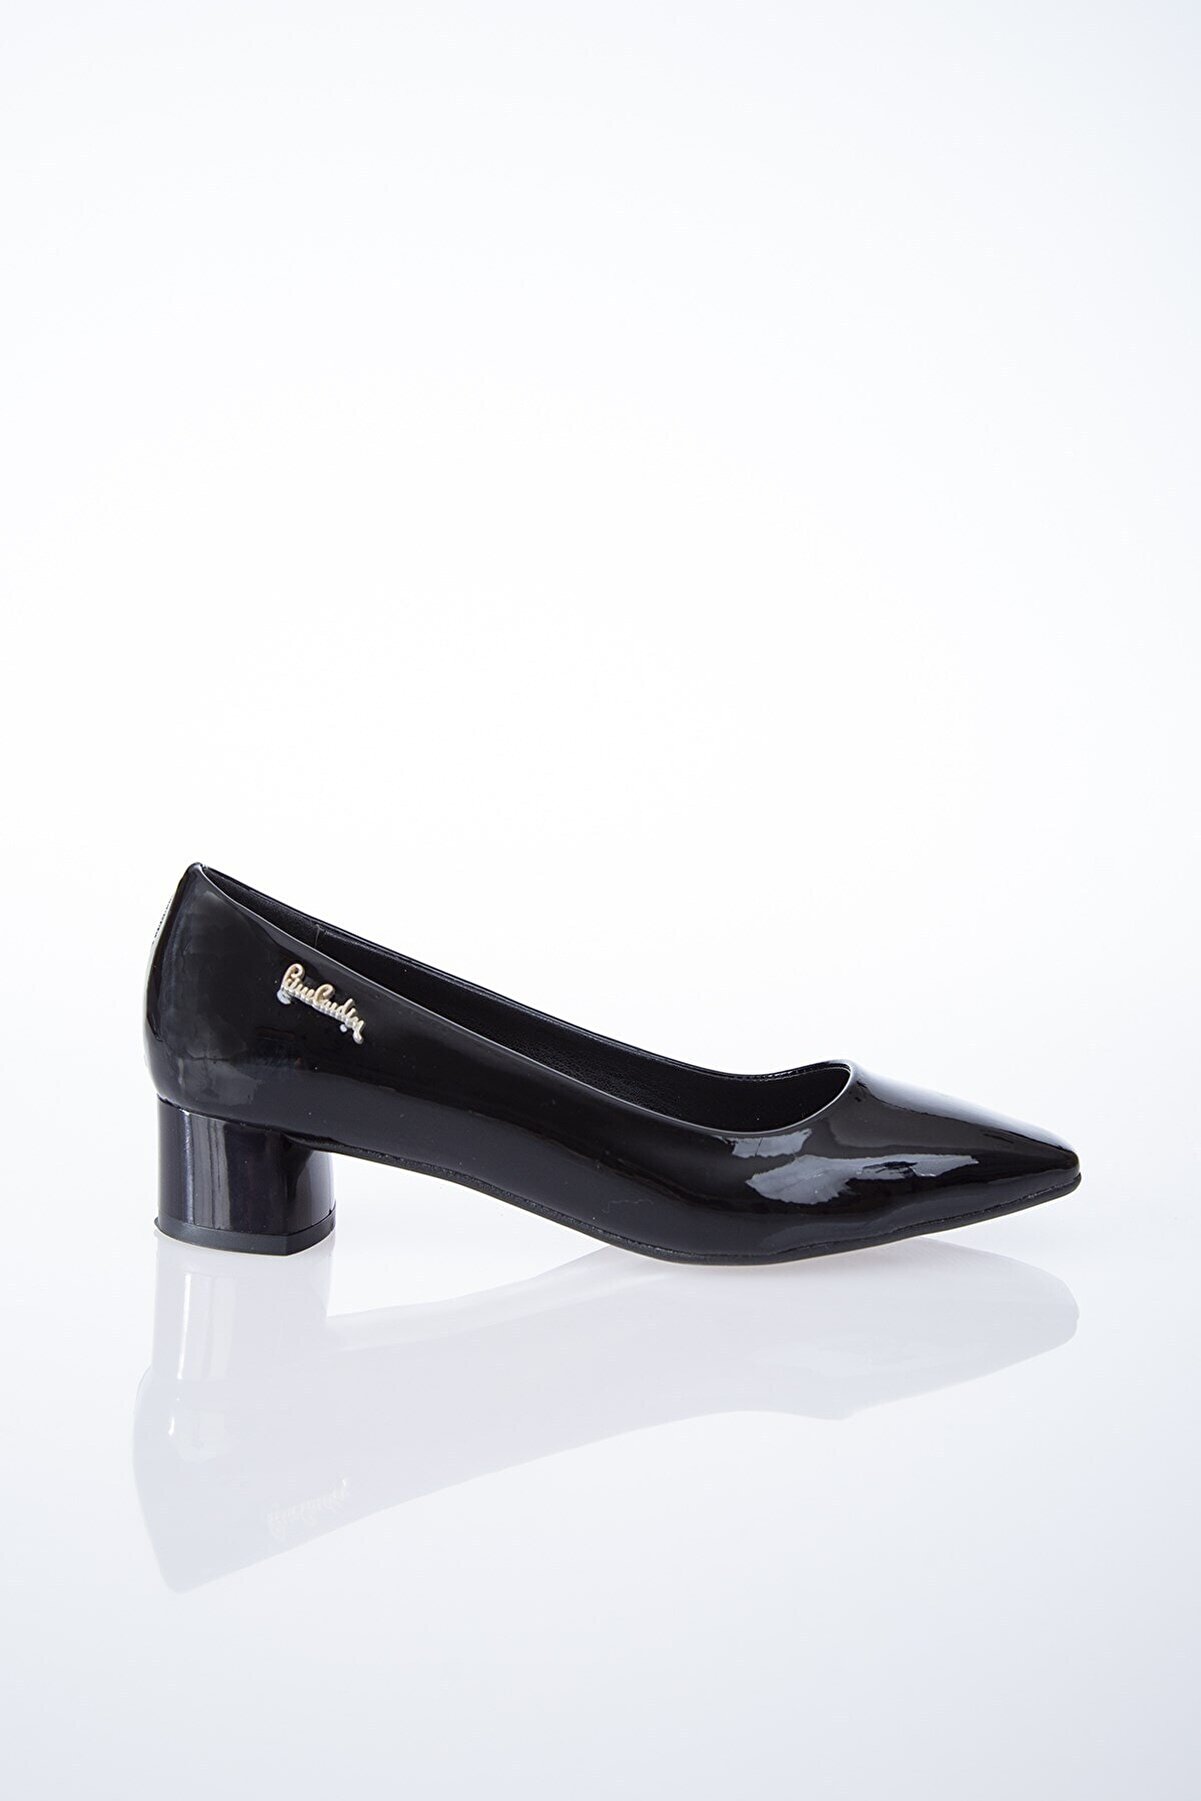 Pierre Cardin Pc-50320 Siyah Kadın Ayakkabı